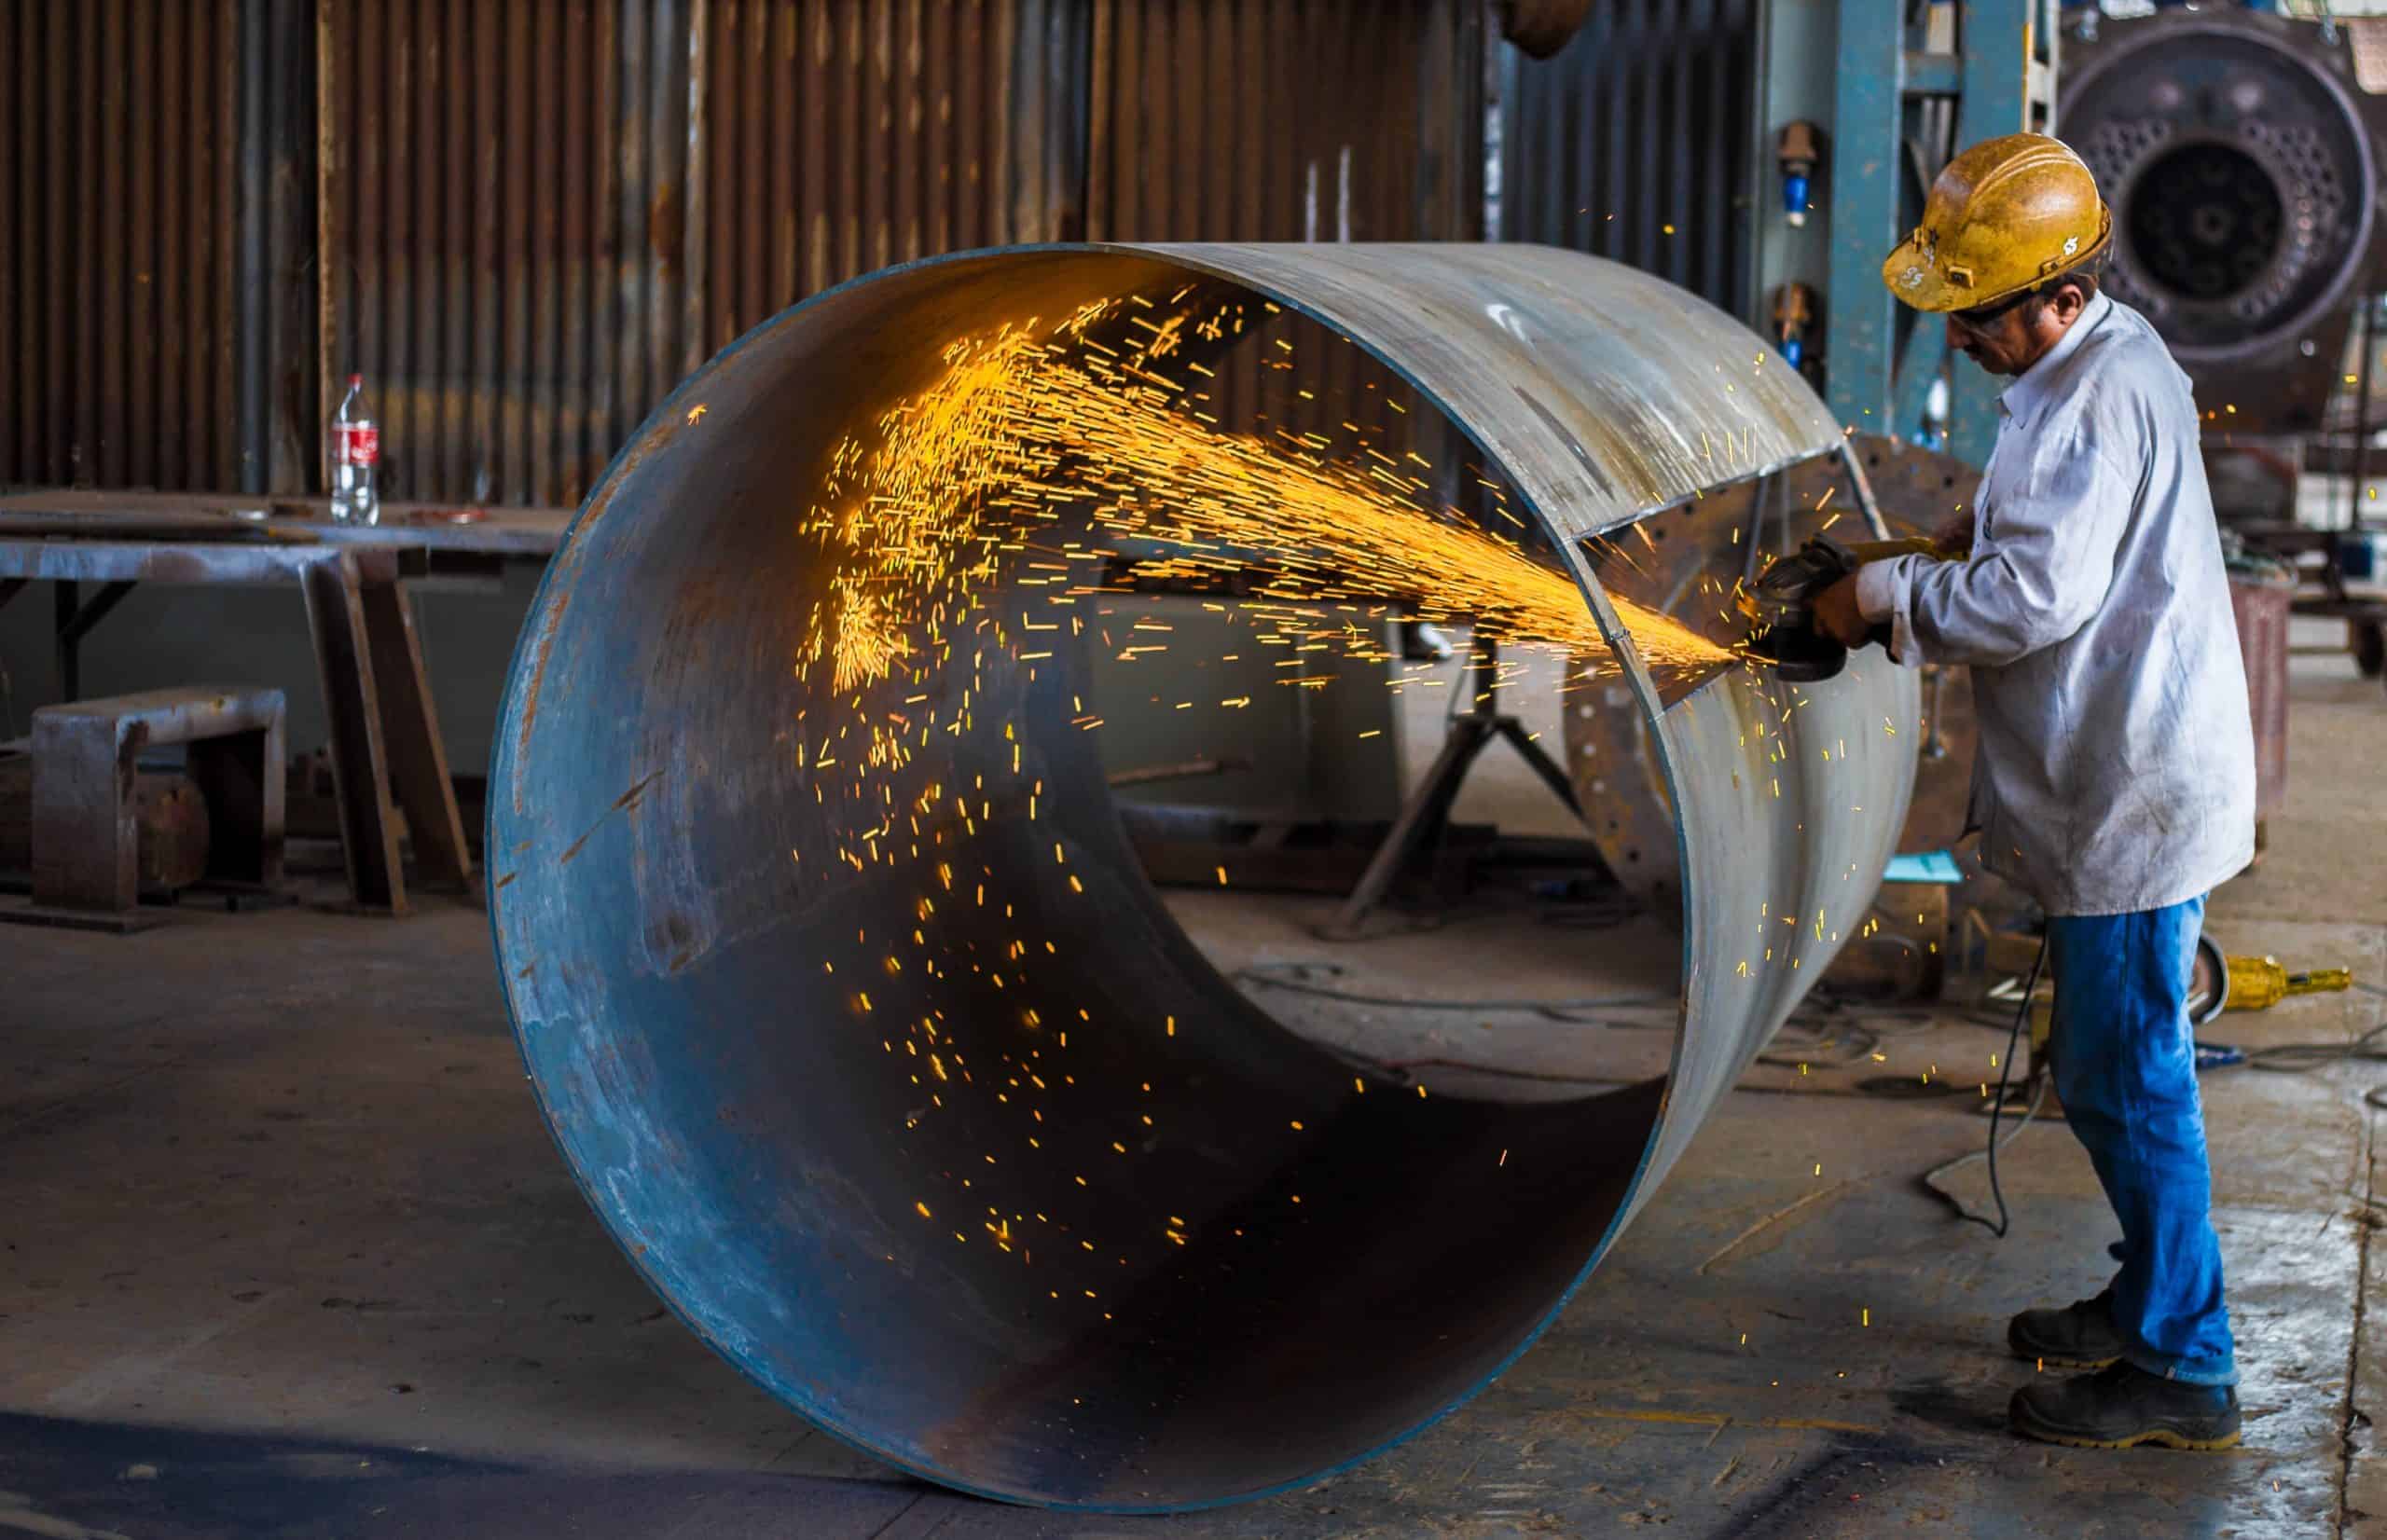 fabricating metal